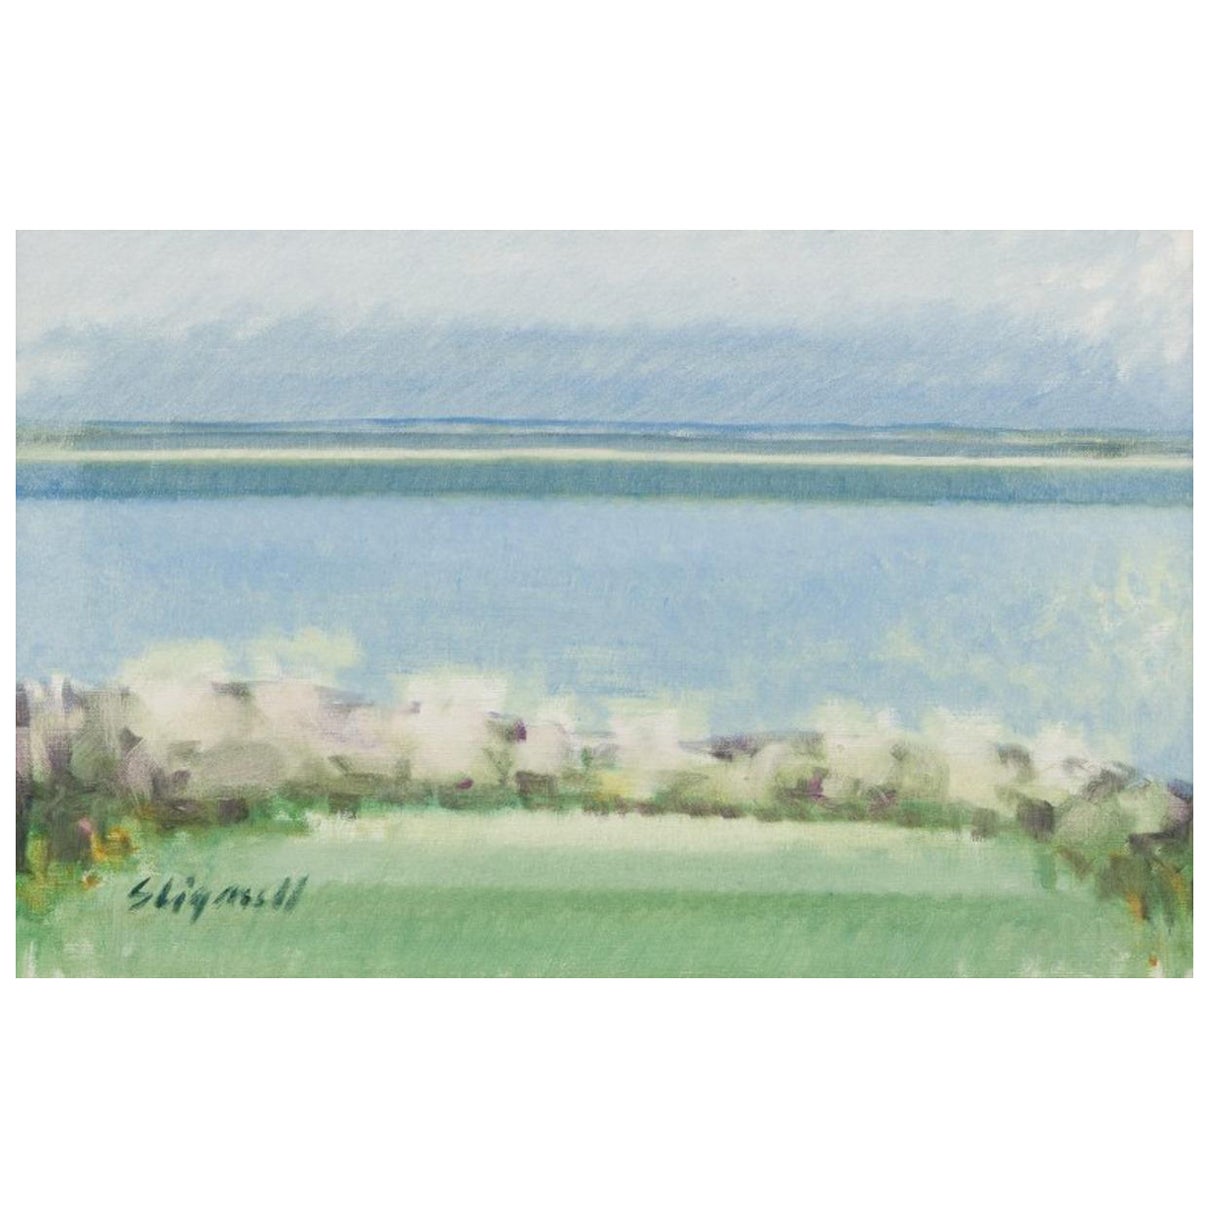 Sven Lignell, listed Swedish artist. Oil on canvas, modernist landscape